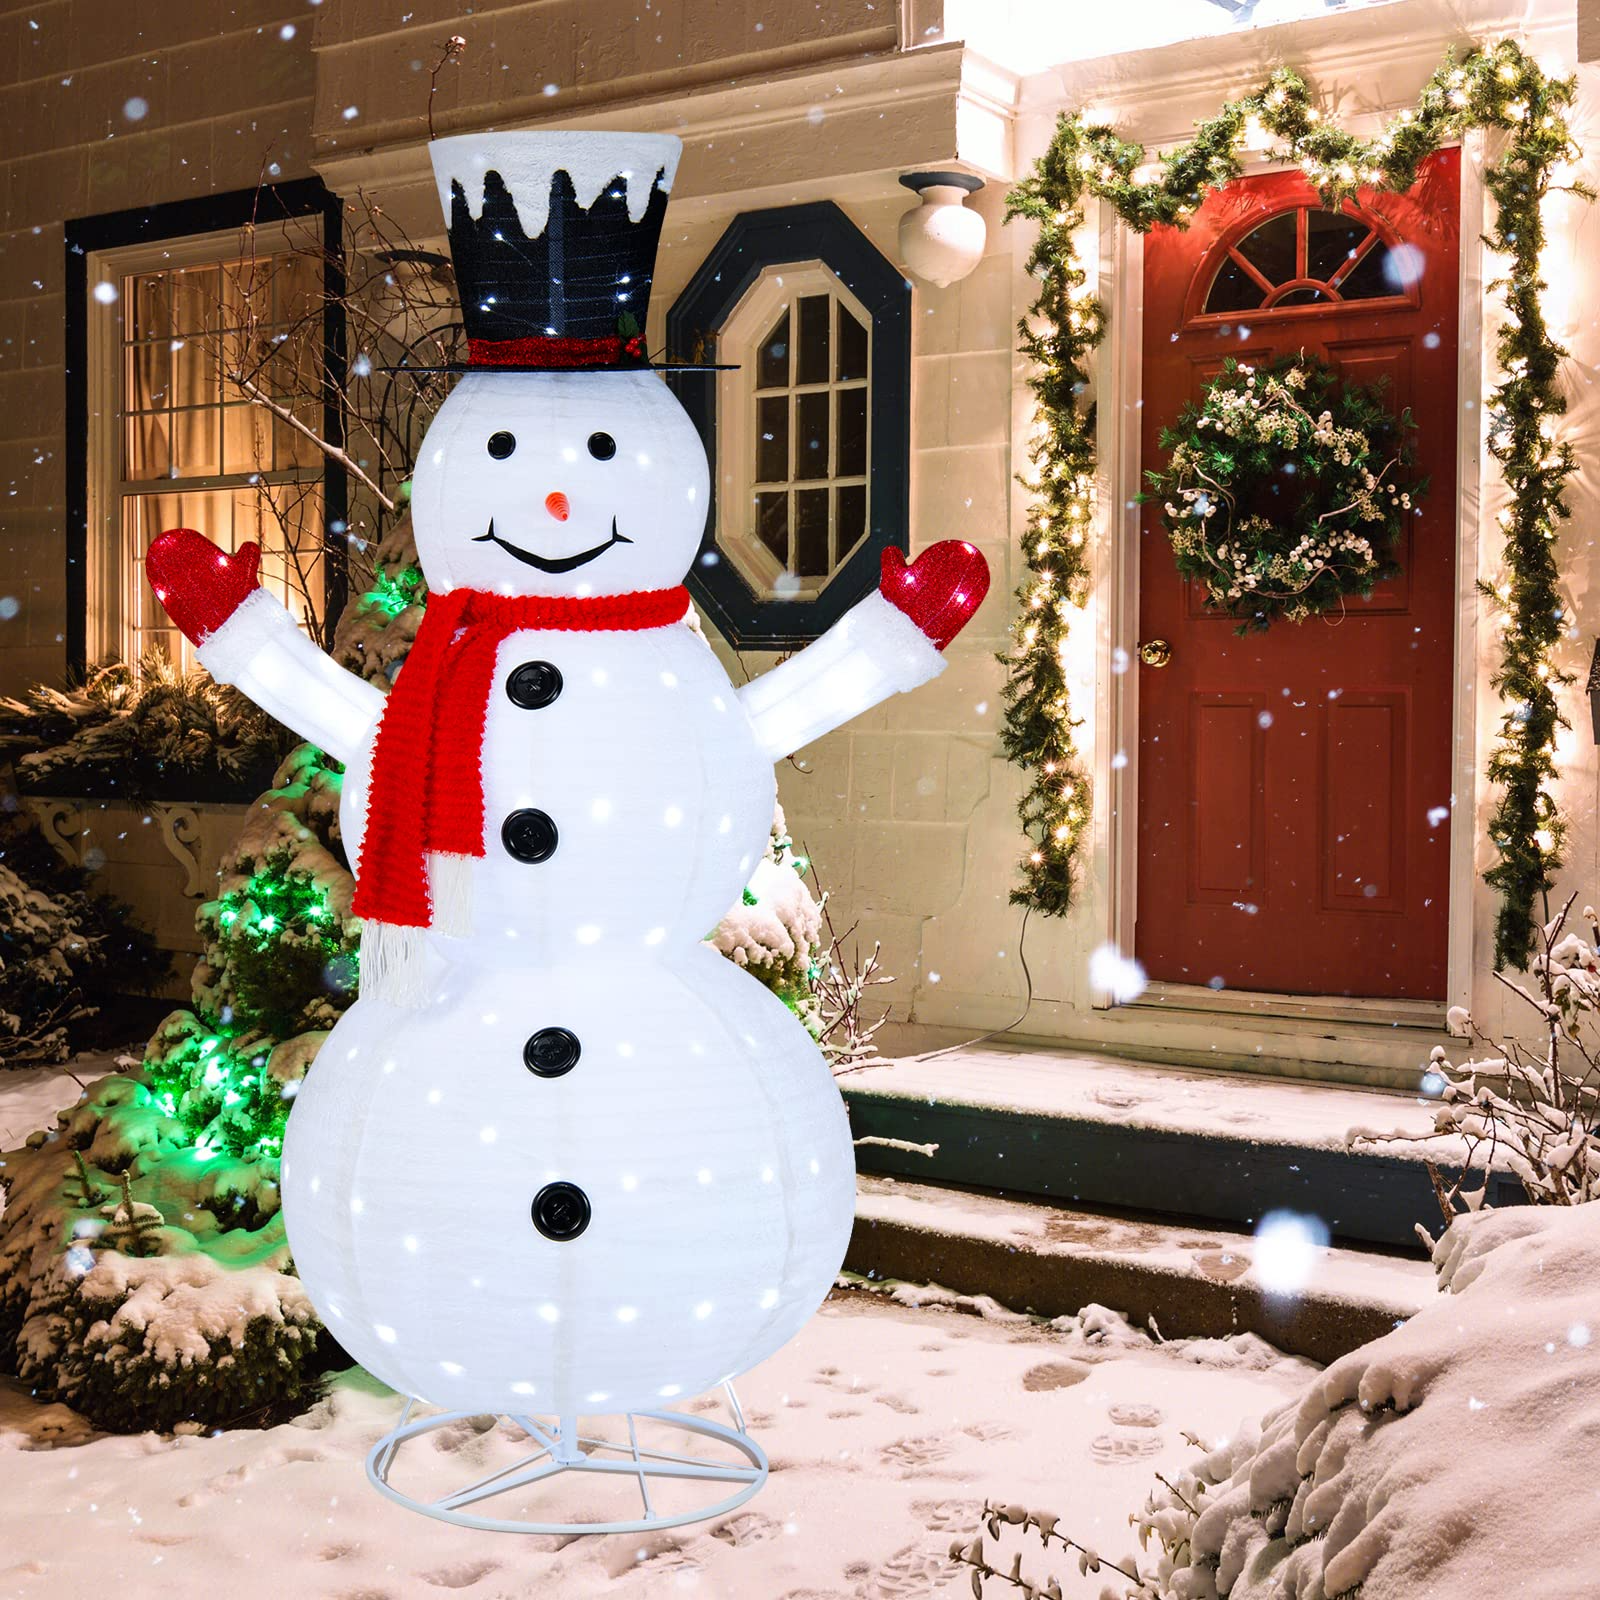 Tangkula 6 FT Lighted Christmas Snowman, Outdoor Pop-up Snowman Figure w/200 Lights